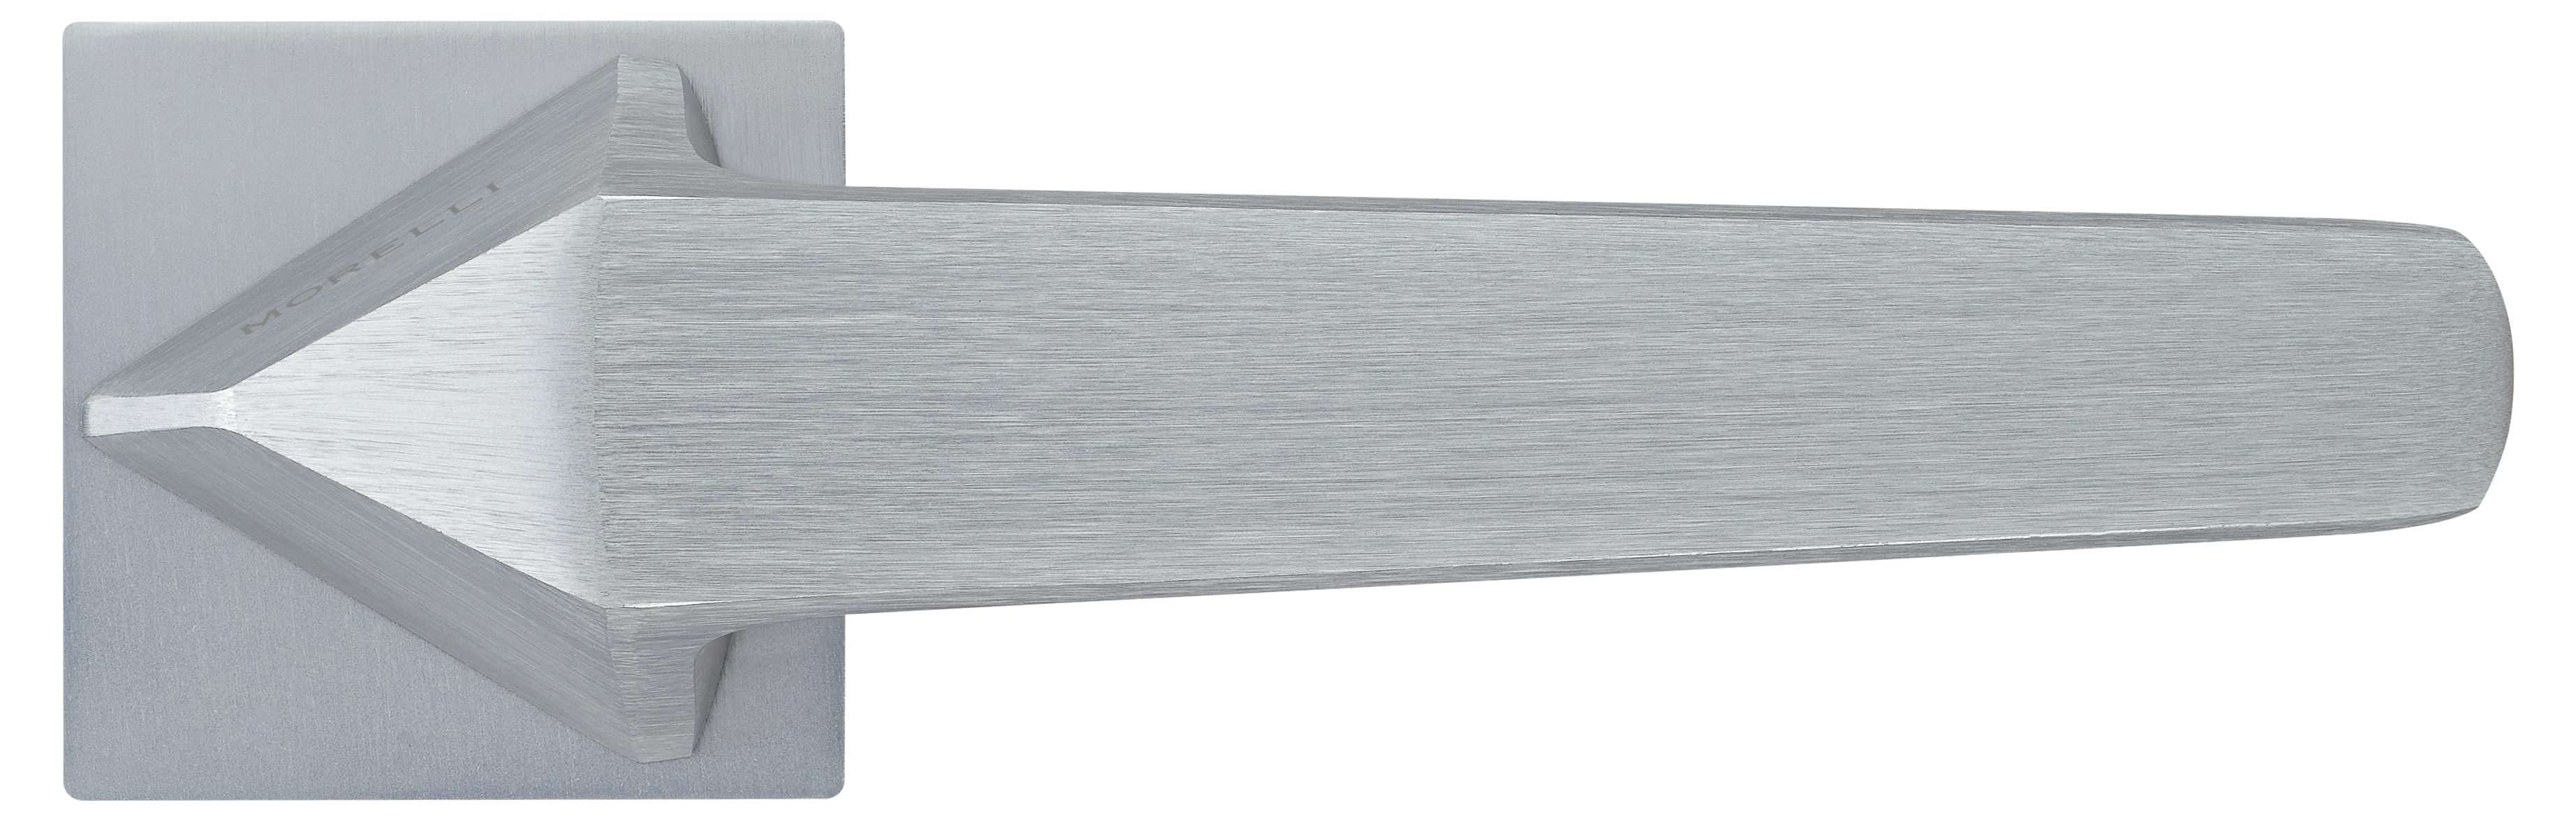 SOUK ручка дверная  на квадратной розетке 6 мм, MH-55-S6 SSC, цвет - суперматовый хром фото купить в Набережных Челнах